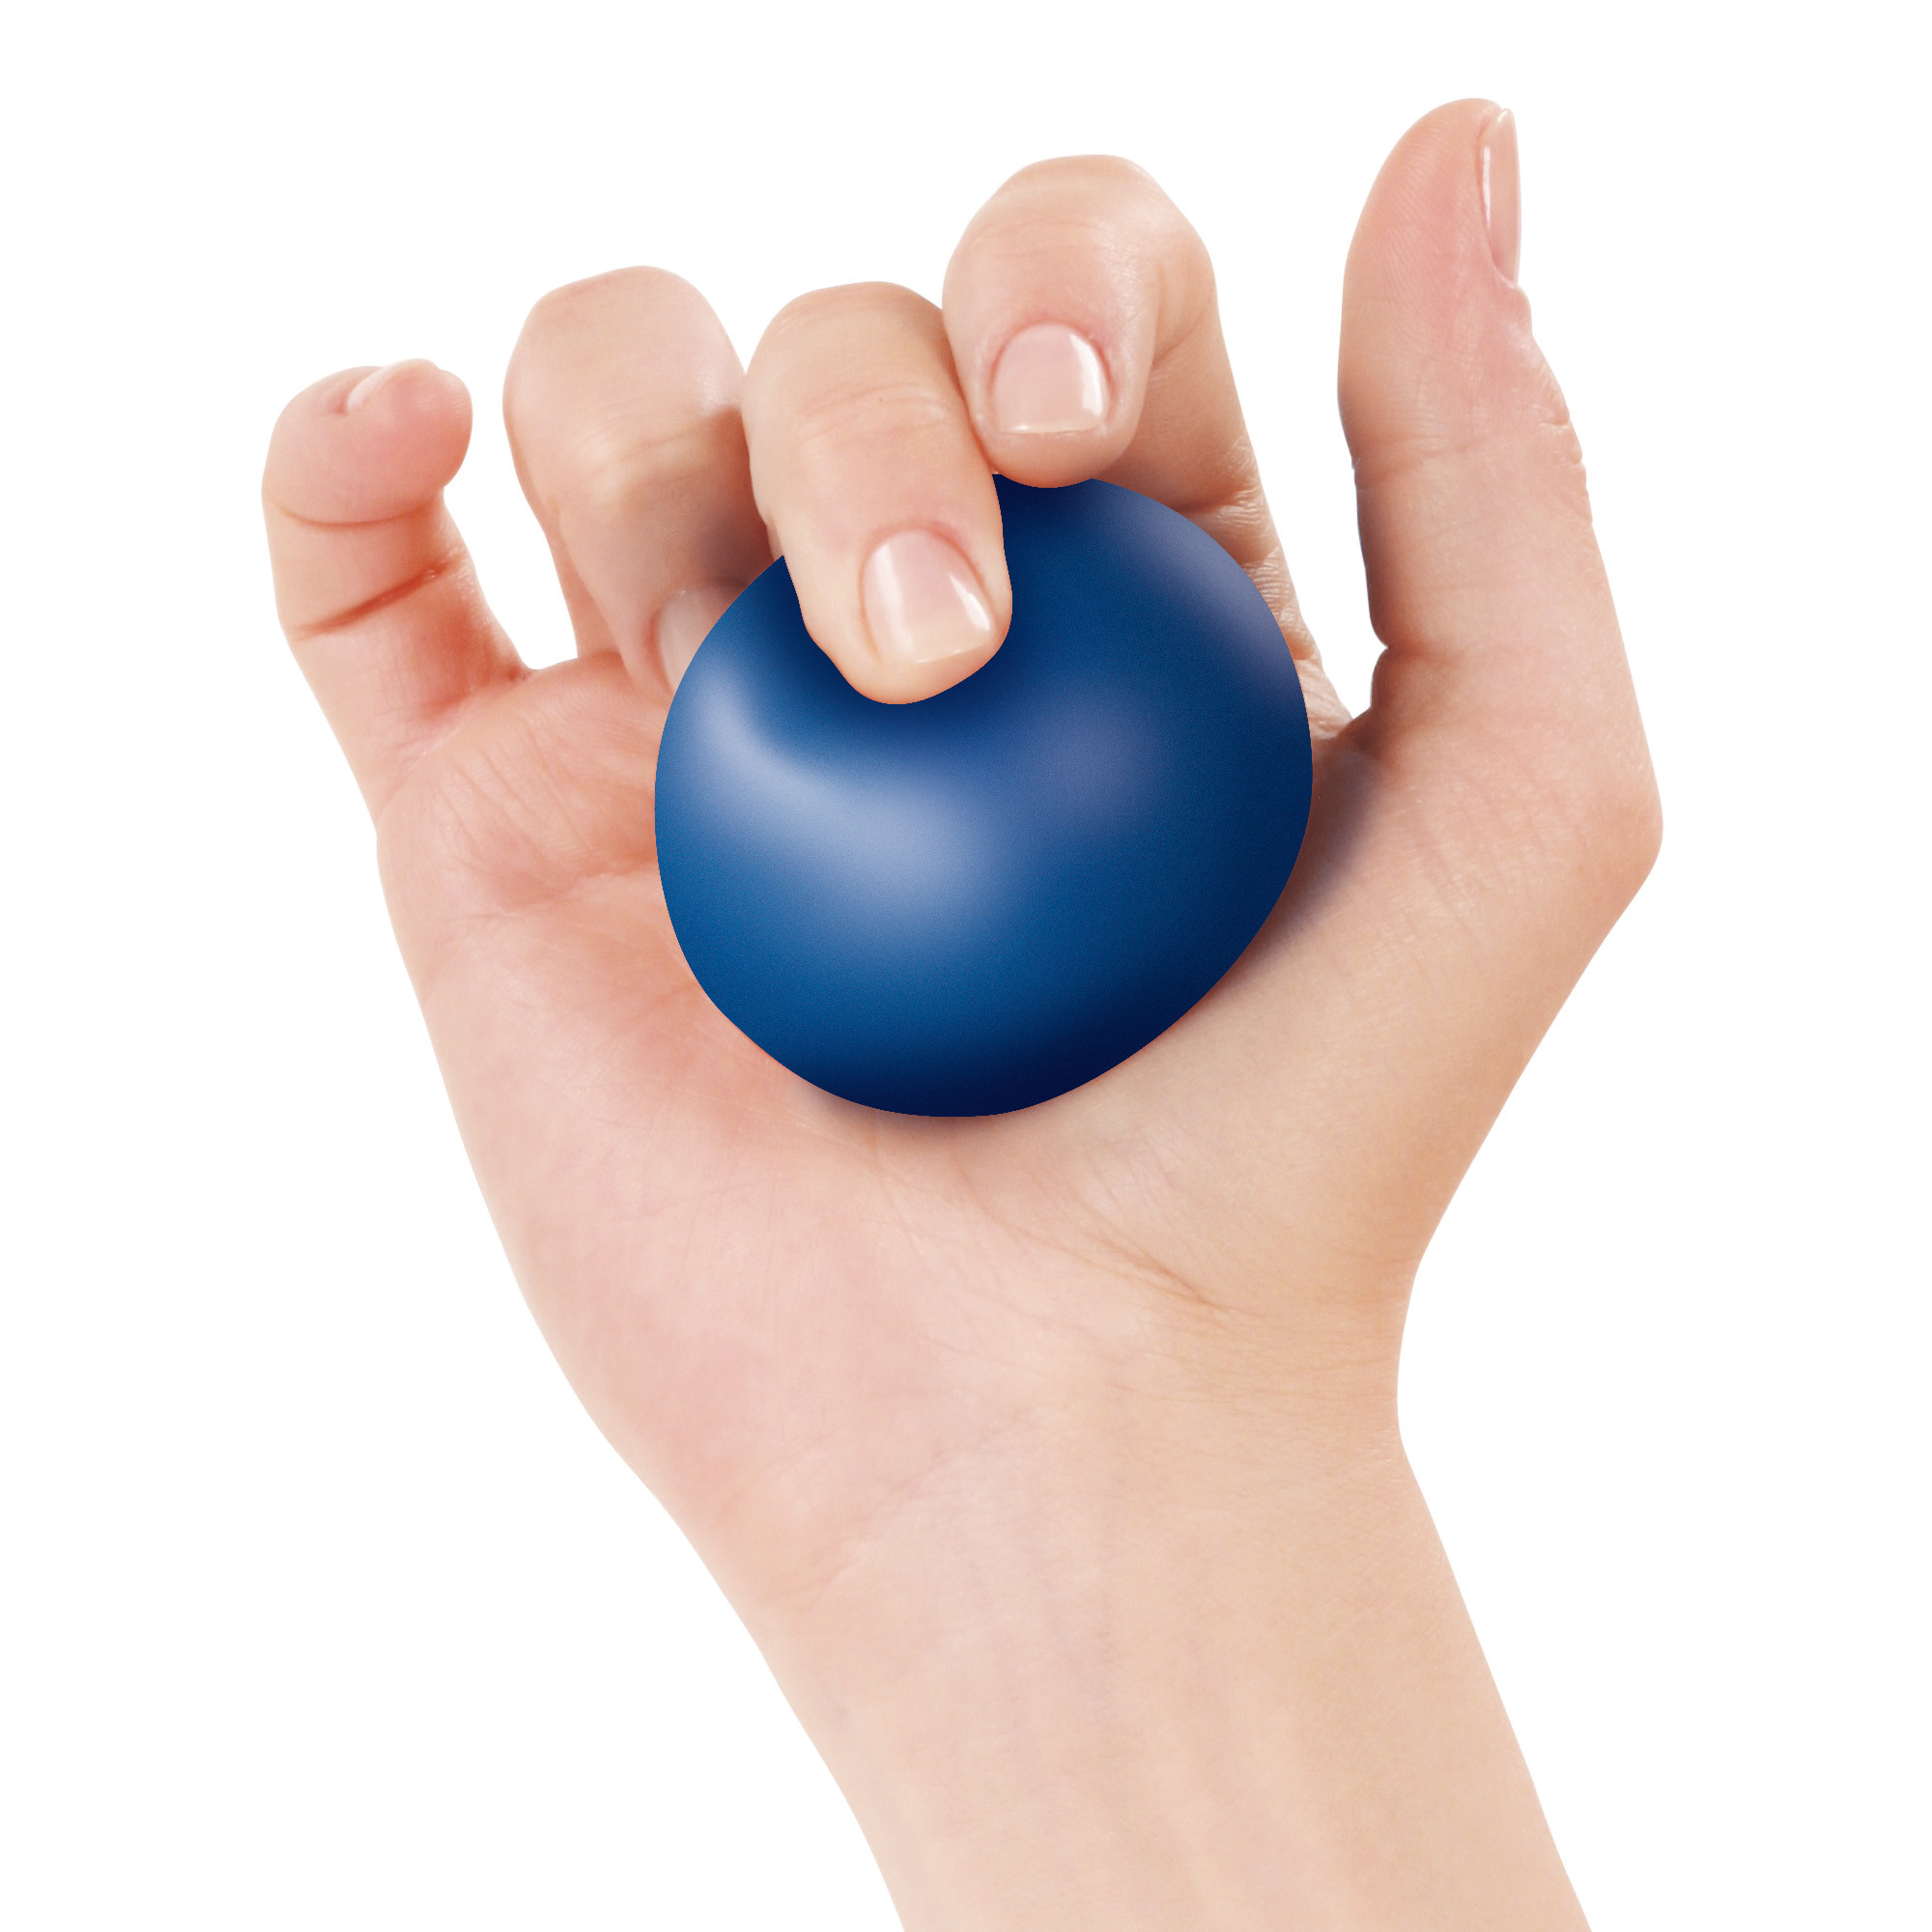 Pallina anti stress Active Ball Espositore da 9 confezioni